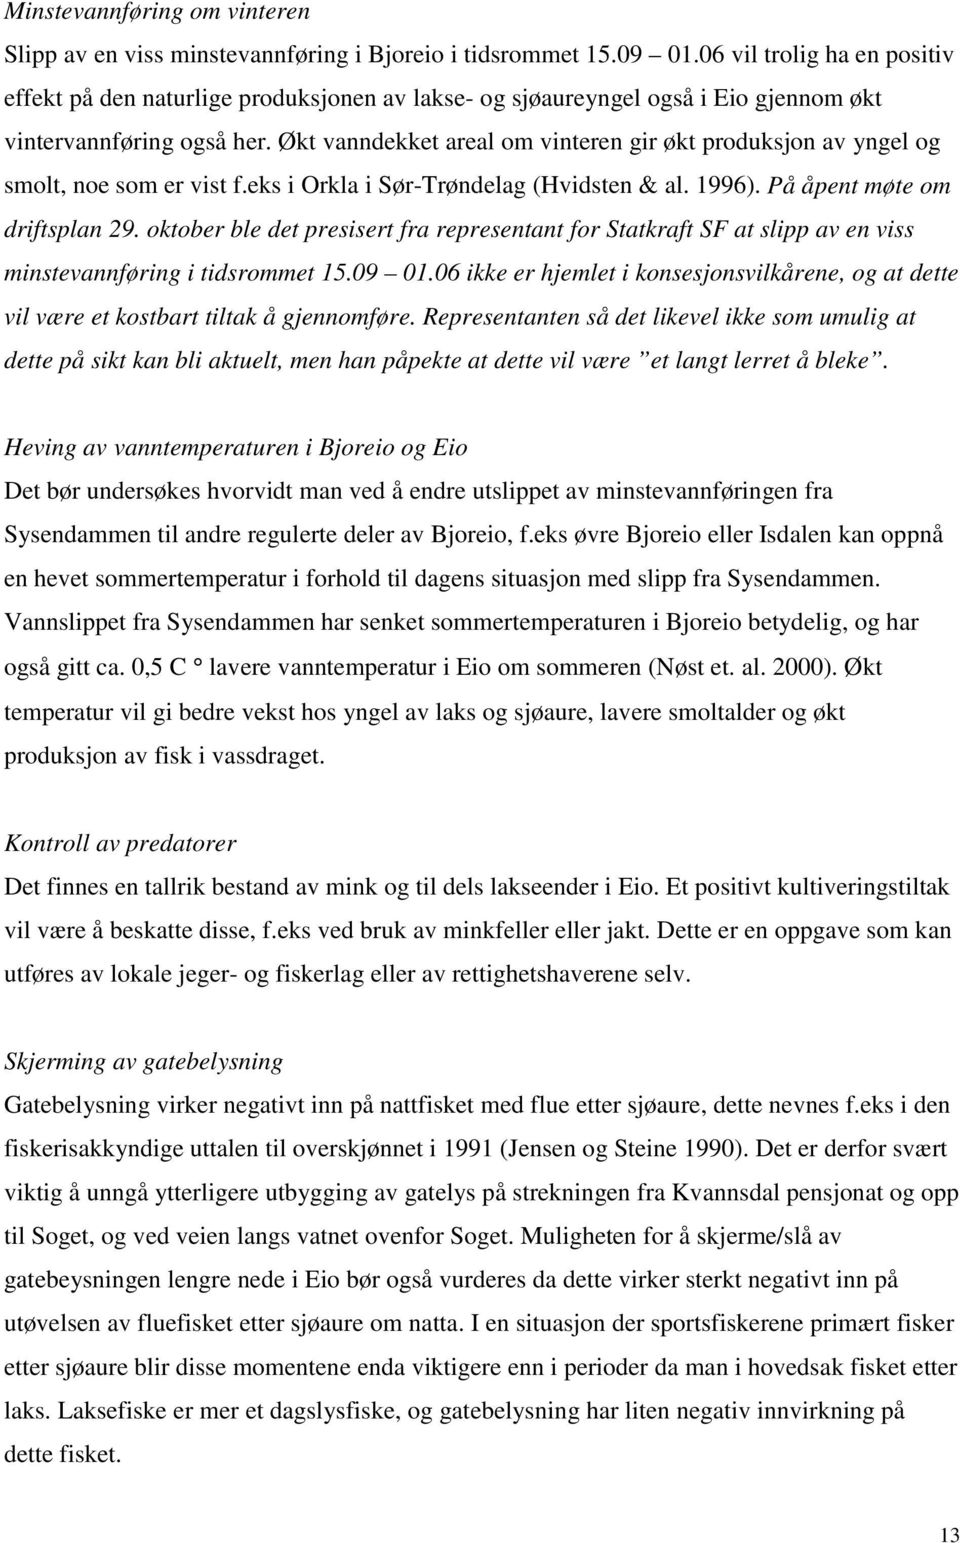 Økt vanndekket areal om vinteren gir økt produksjon av yngel og smolt, noe som er vist f.eks i Orkla i Sør-Trøndelag (Hvidsten & al. 1996). På åpent møte om driftsplan 29.